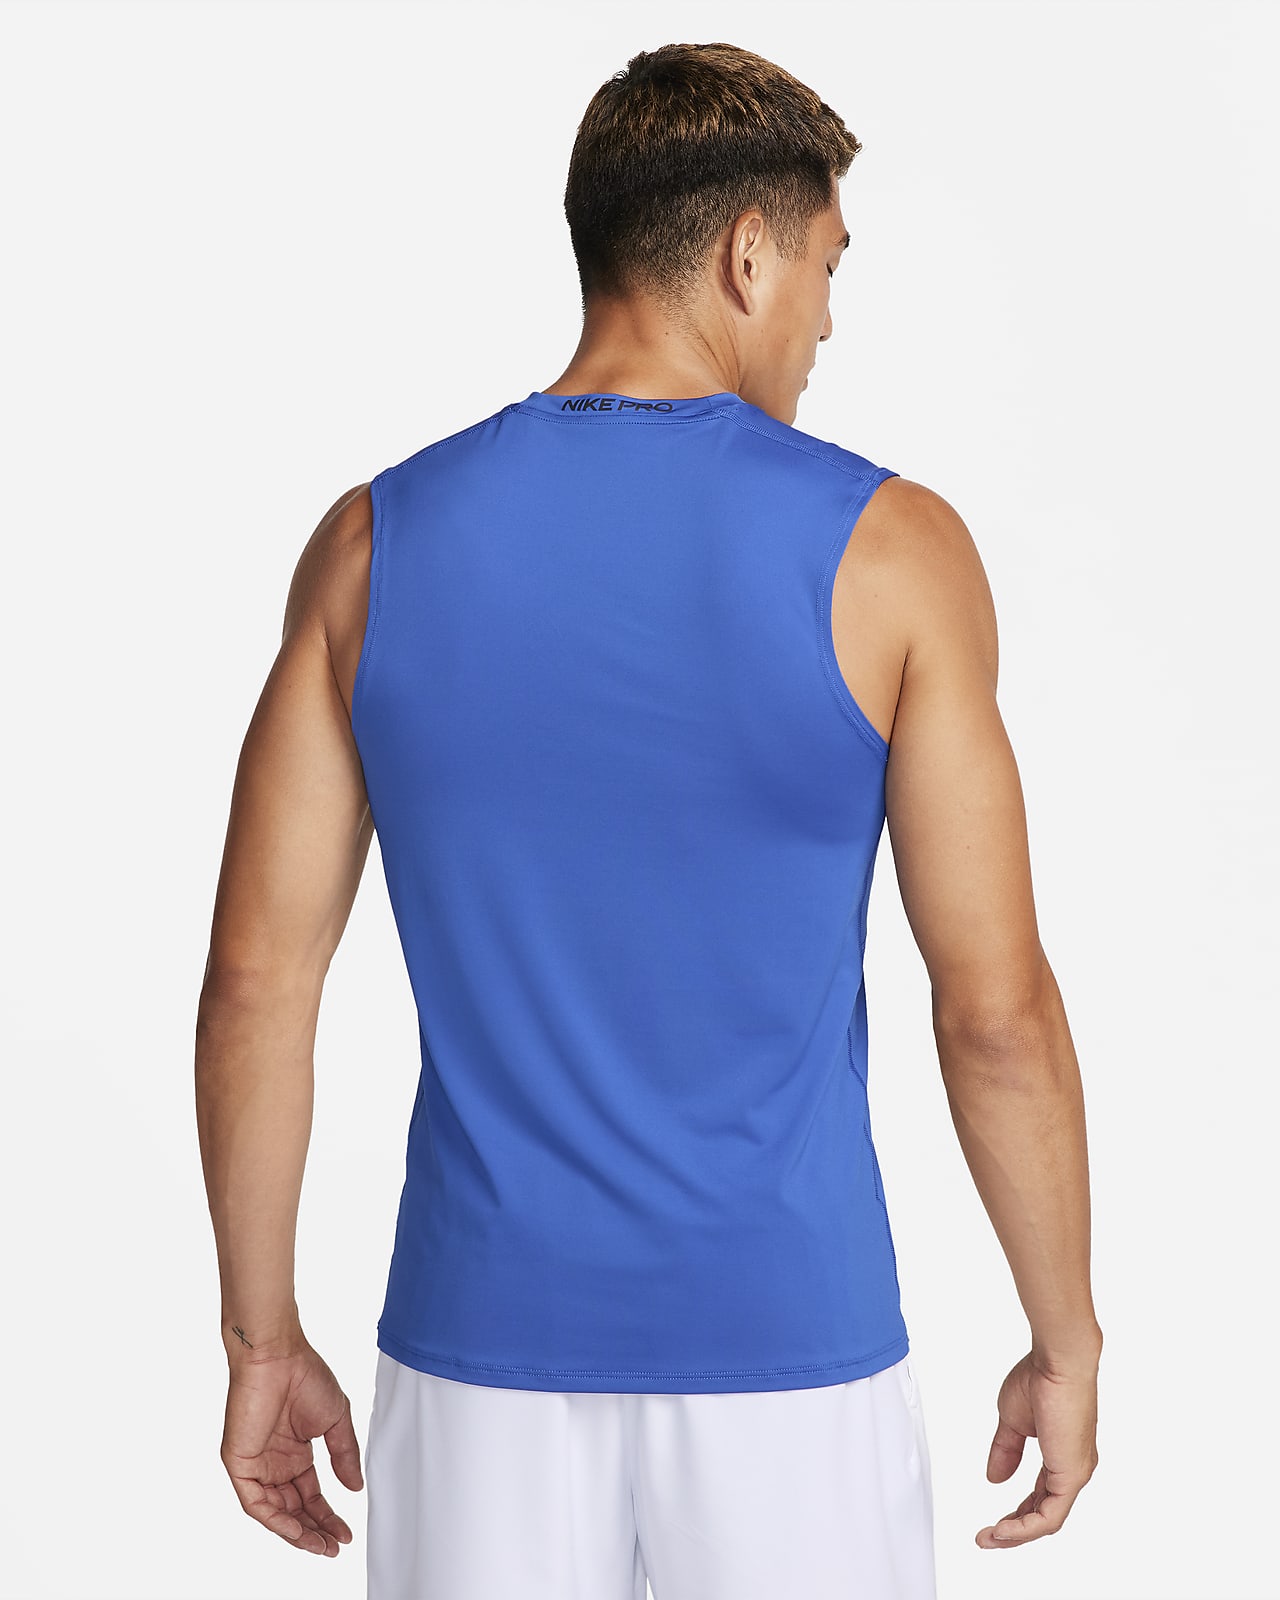 Nike Pro Dri-FIT Men's Tight-Fit Sleeveless Top. Nike PH